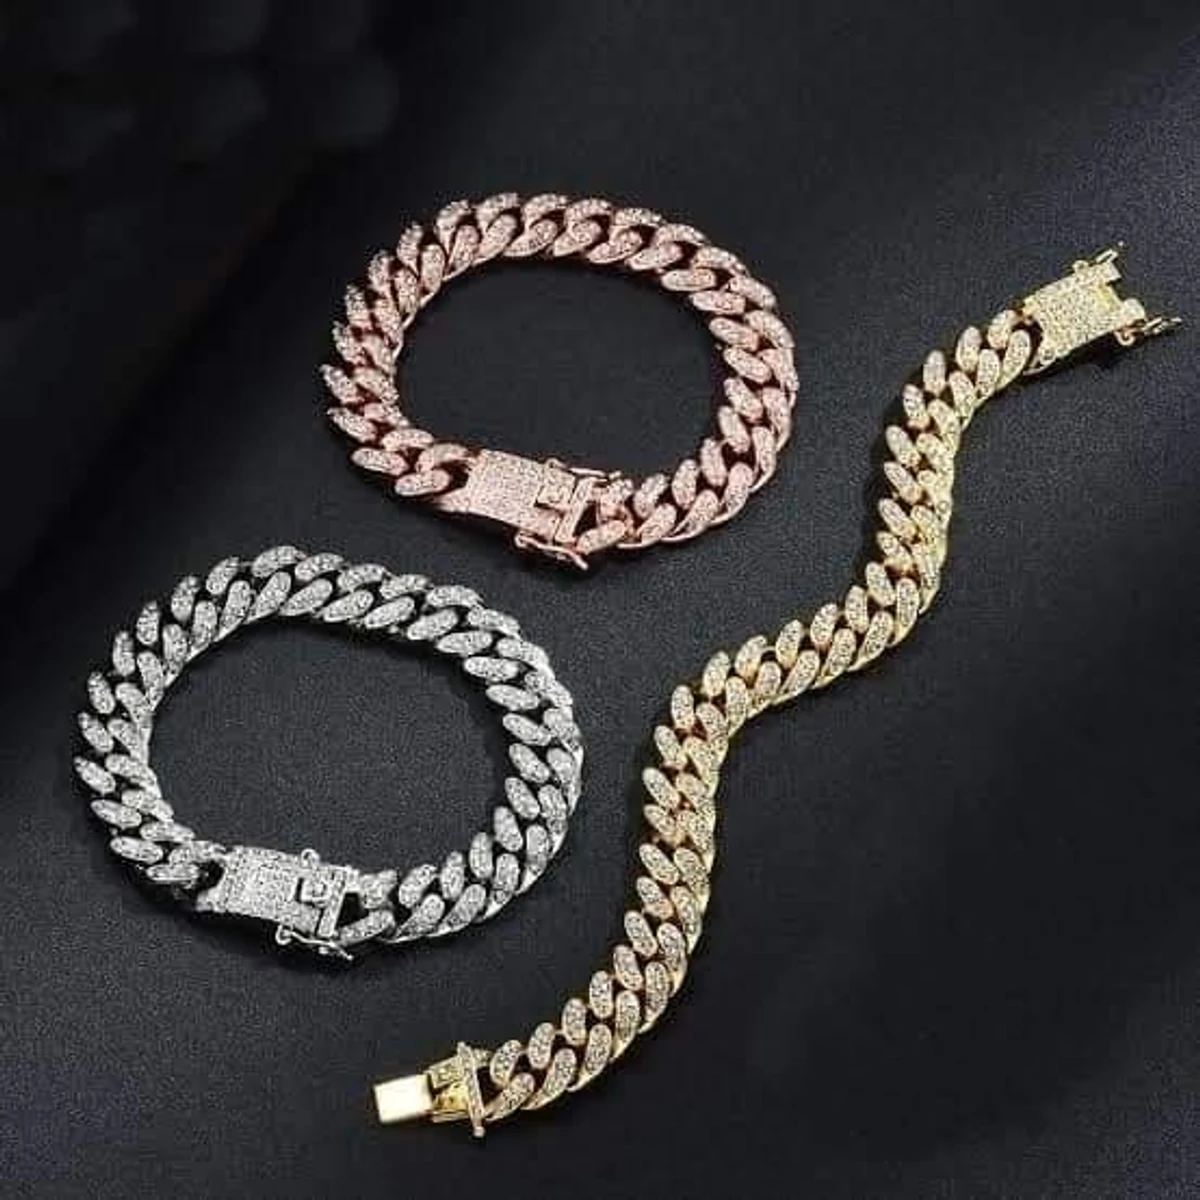 COMBO PACK Stone Crystal Bracelet & Chain Set For Men